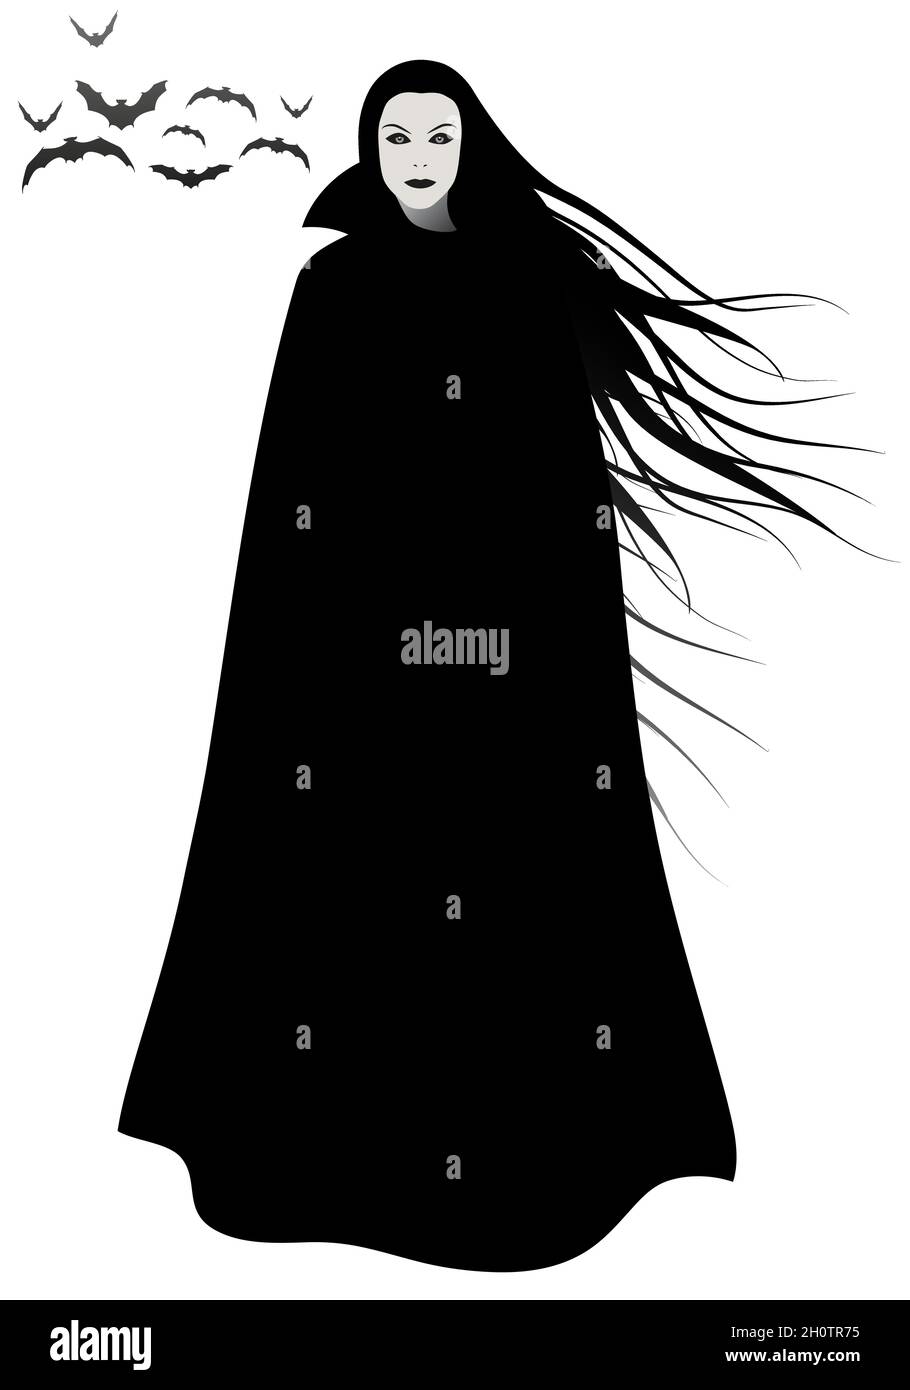 Donna inquietante con lunghi capelli che soffiano nel vento, indossando un lungo mantello nero, sotto un gruppo di pipistrelli, isolato su sfondo bianco. Illustrazione Vettoriale